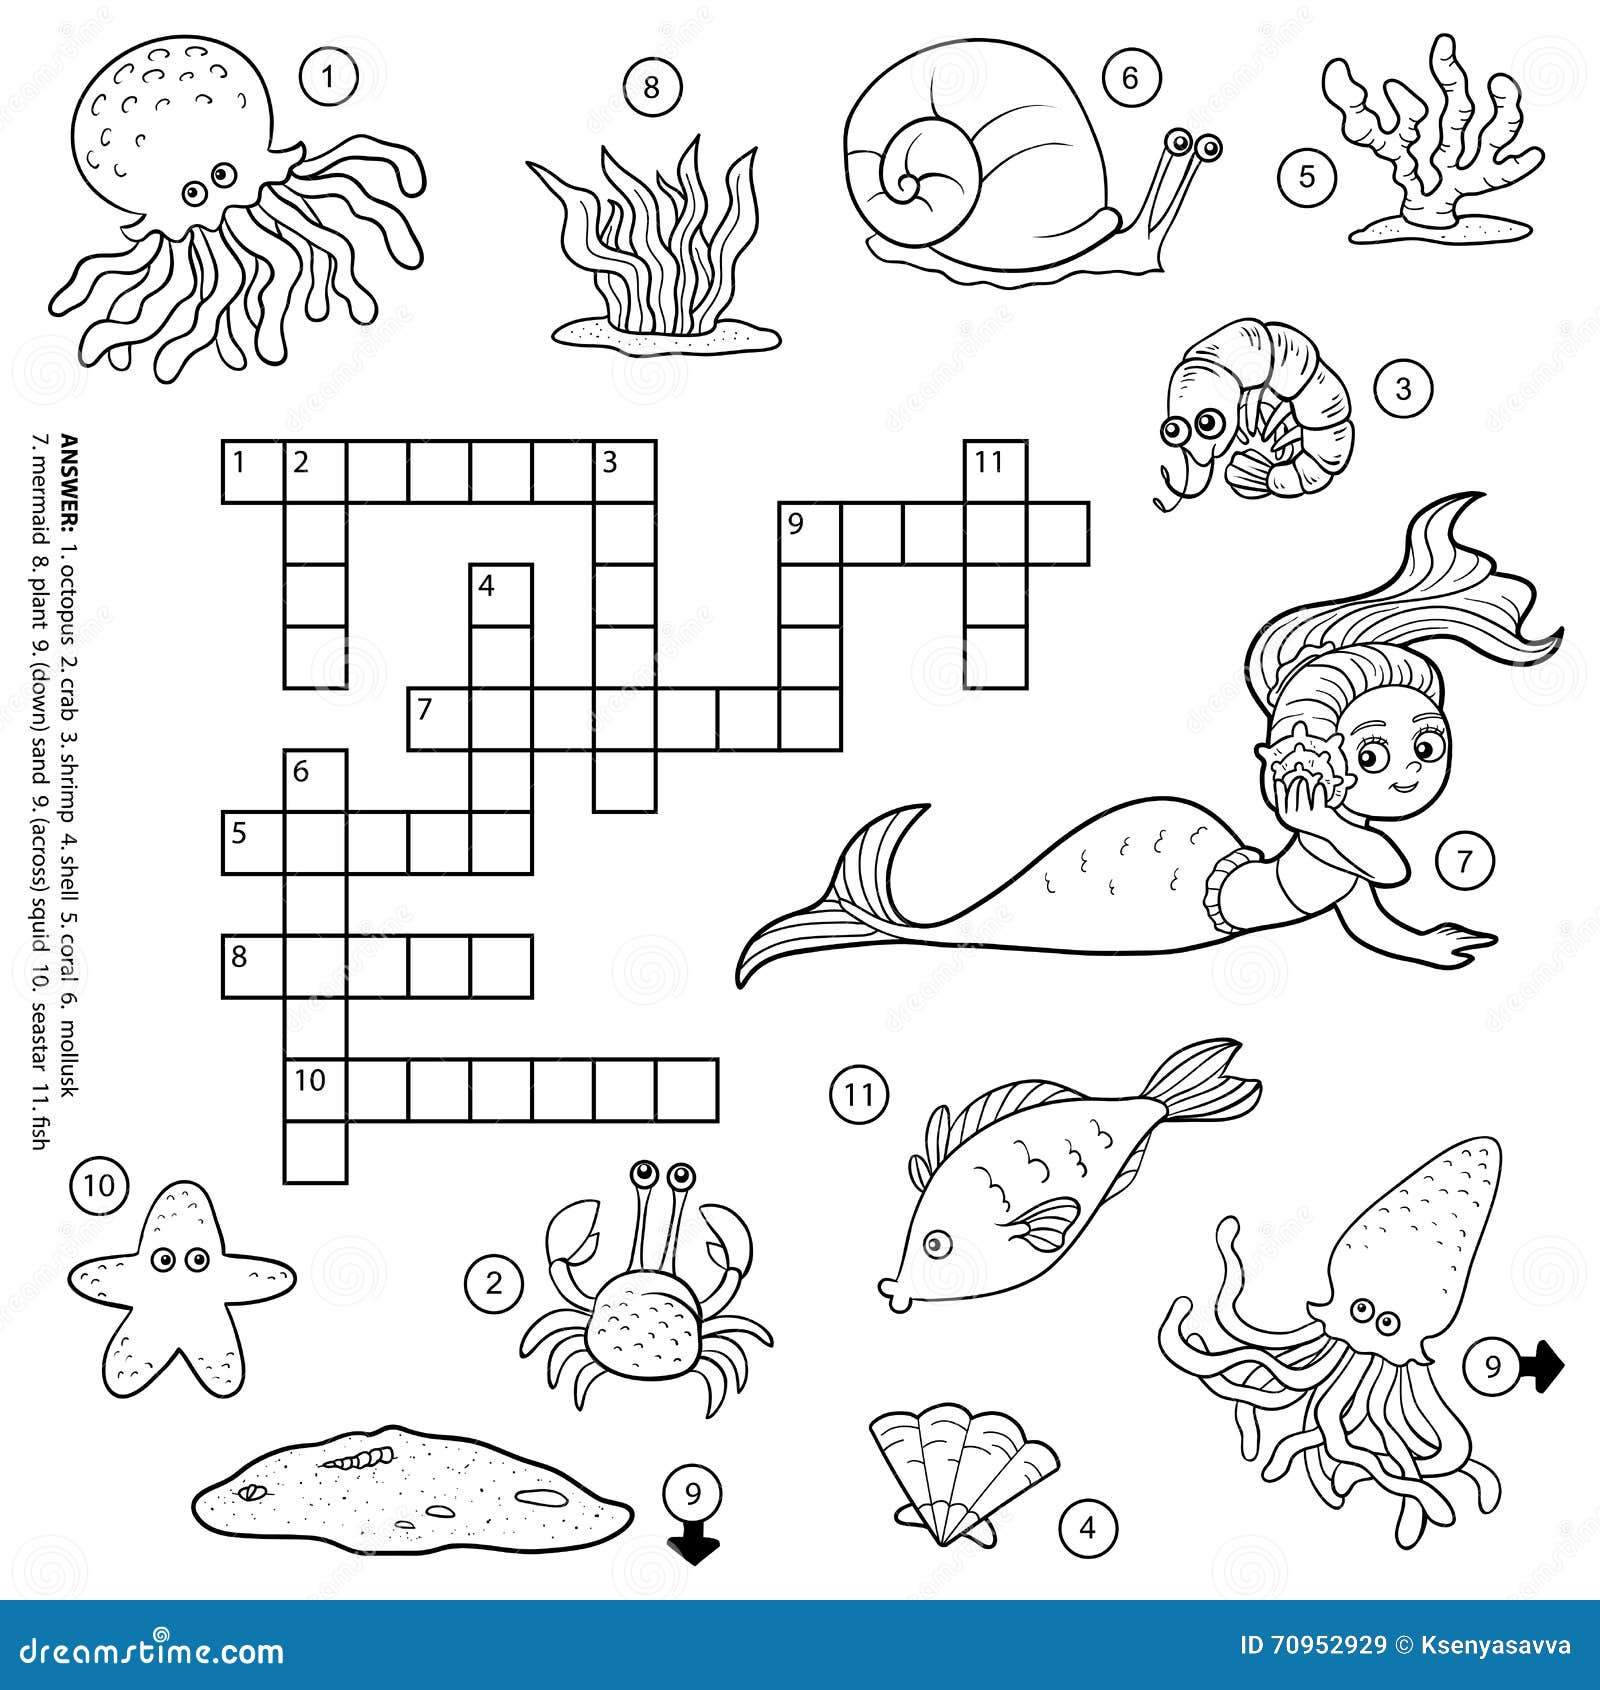 Jogo de quebra-cabeça ecológico de busca de palavras vetorial para crianças  questionário de busca de palavras do dia da terra